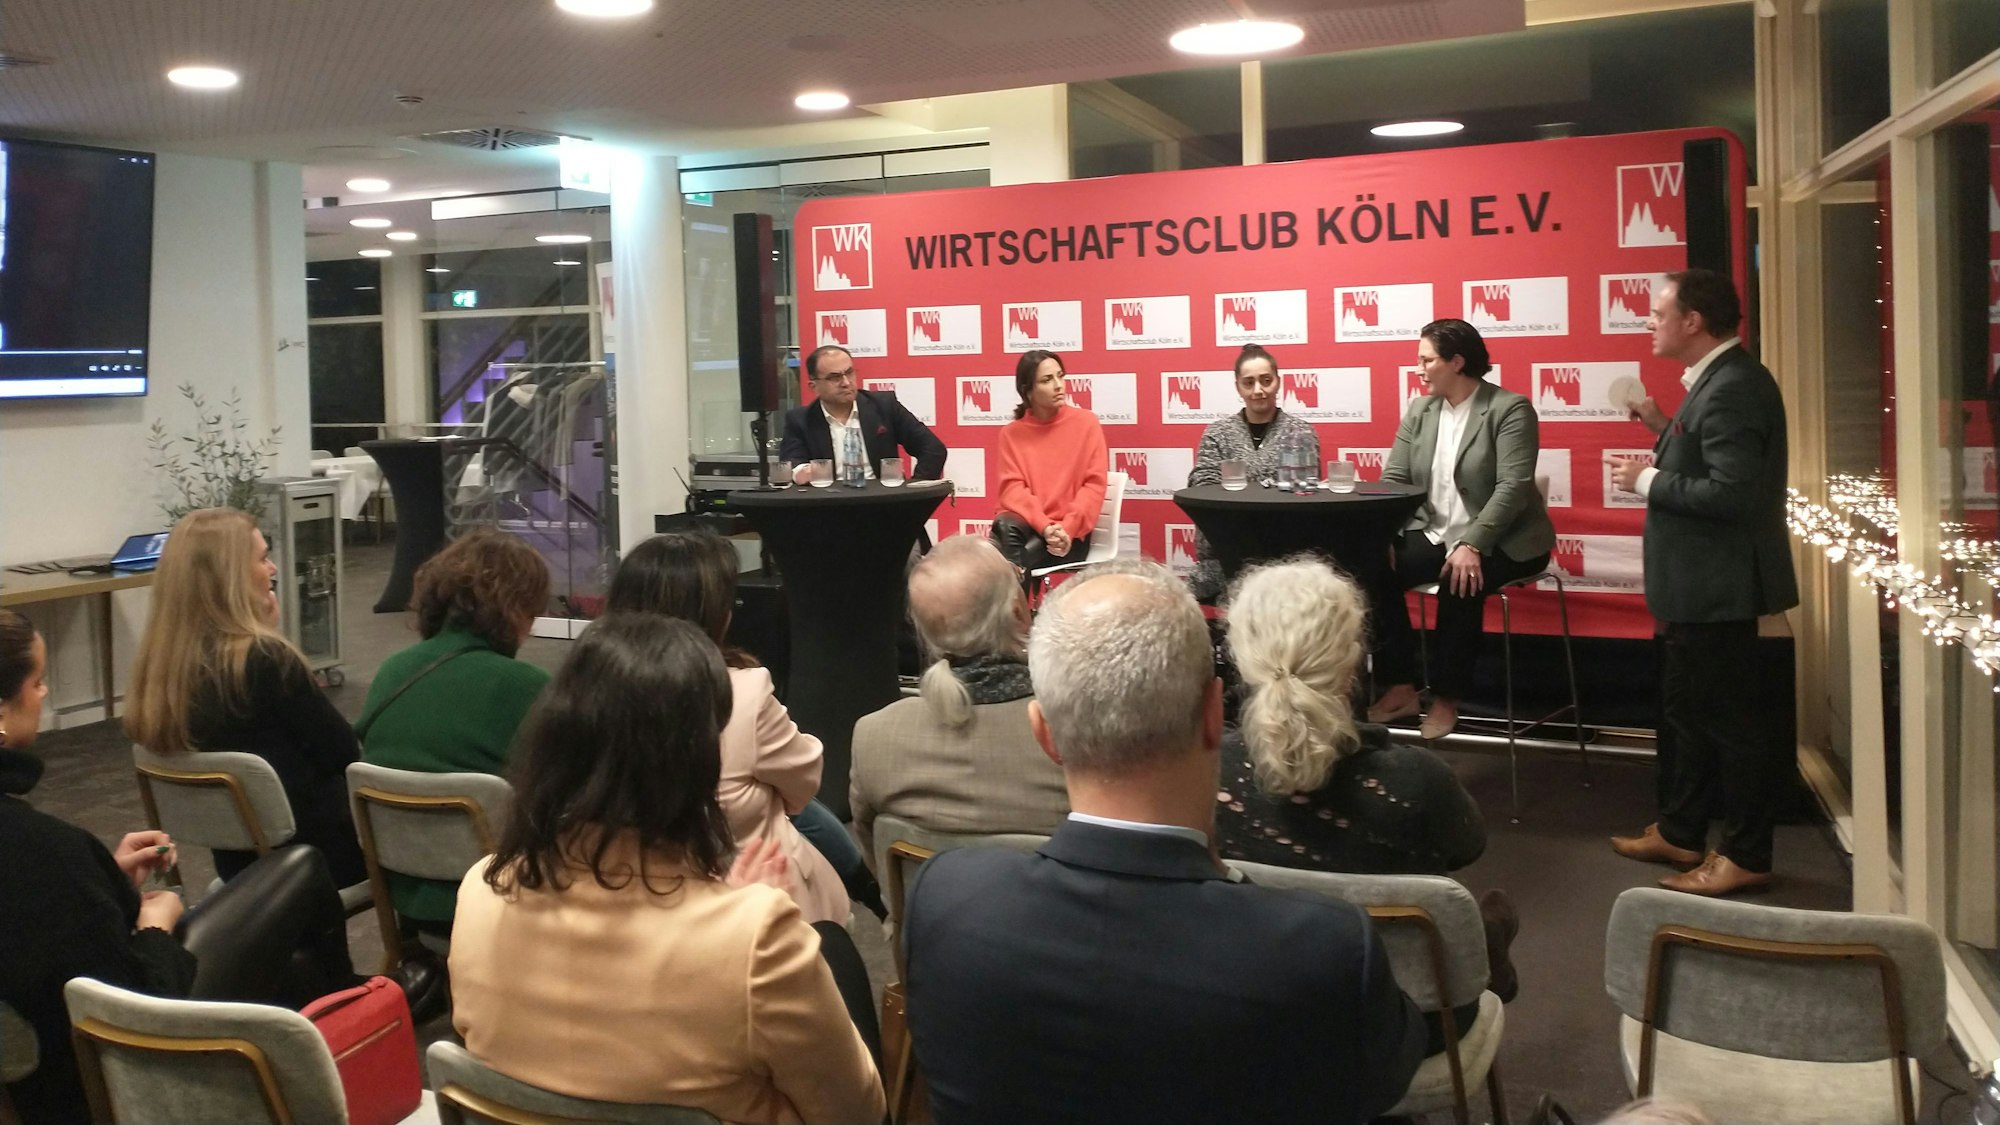 Kölner Wirtschaftsclub mit 4 Podiumsgästen und Moderator, im Vordergrund Publikum.